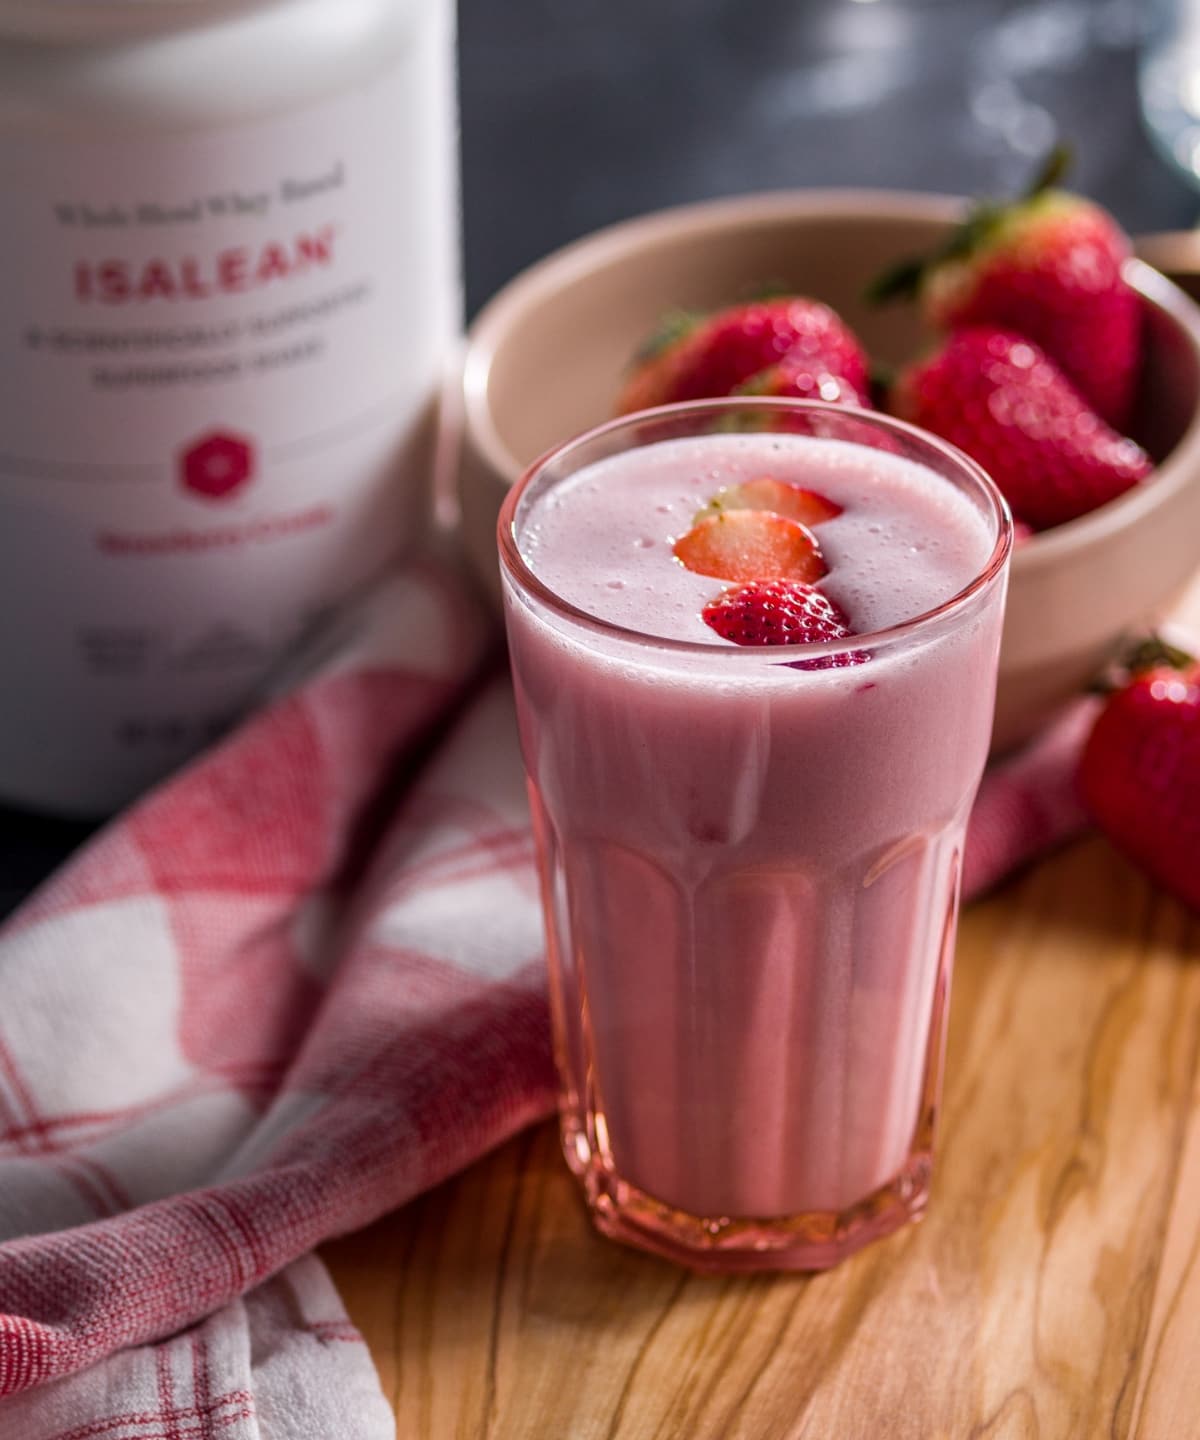 Whole Blend Whey-Based IsaLean® Shake Strawberry Cream Canister